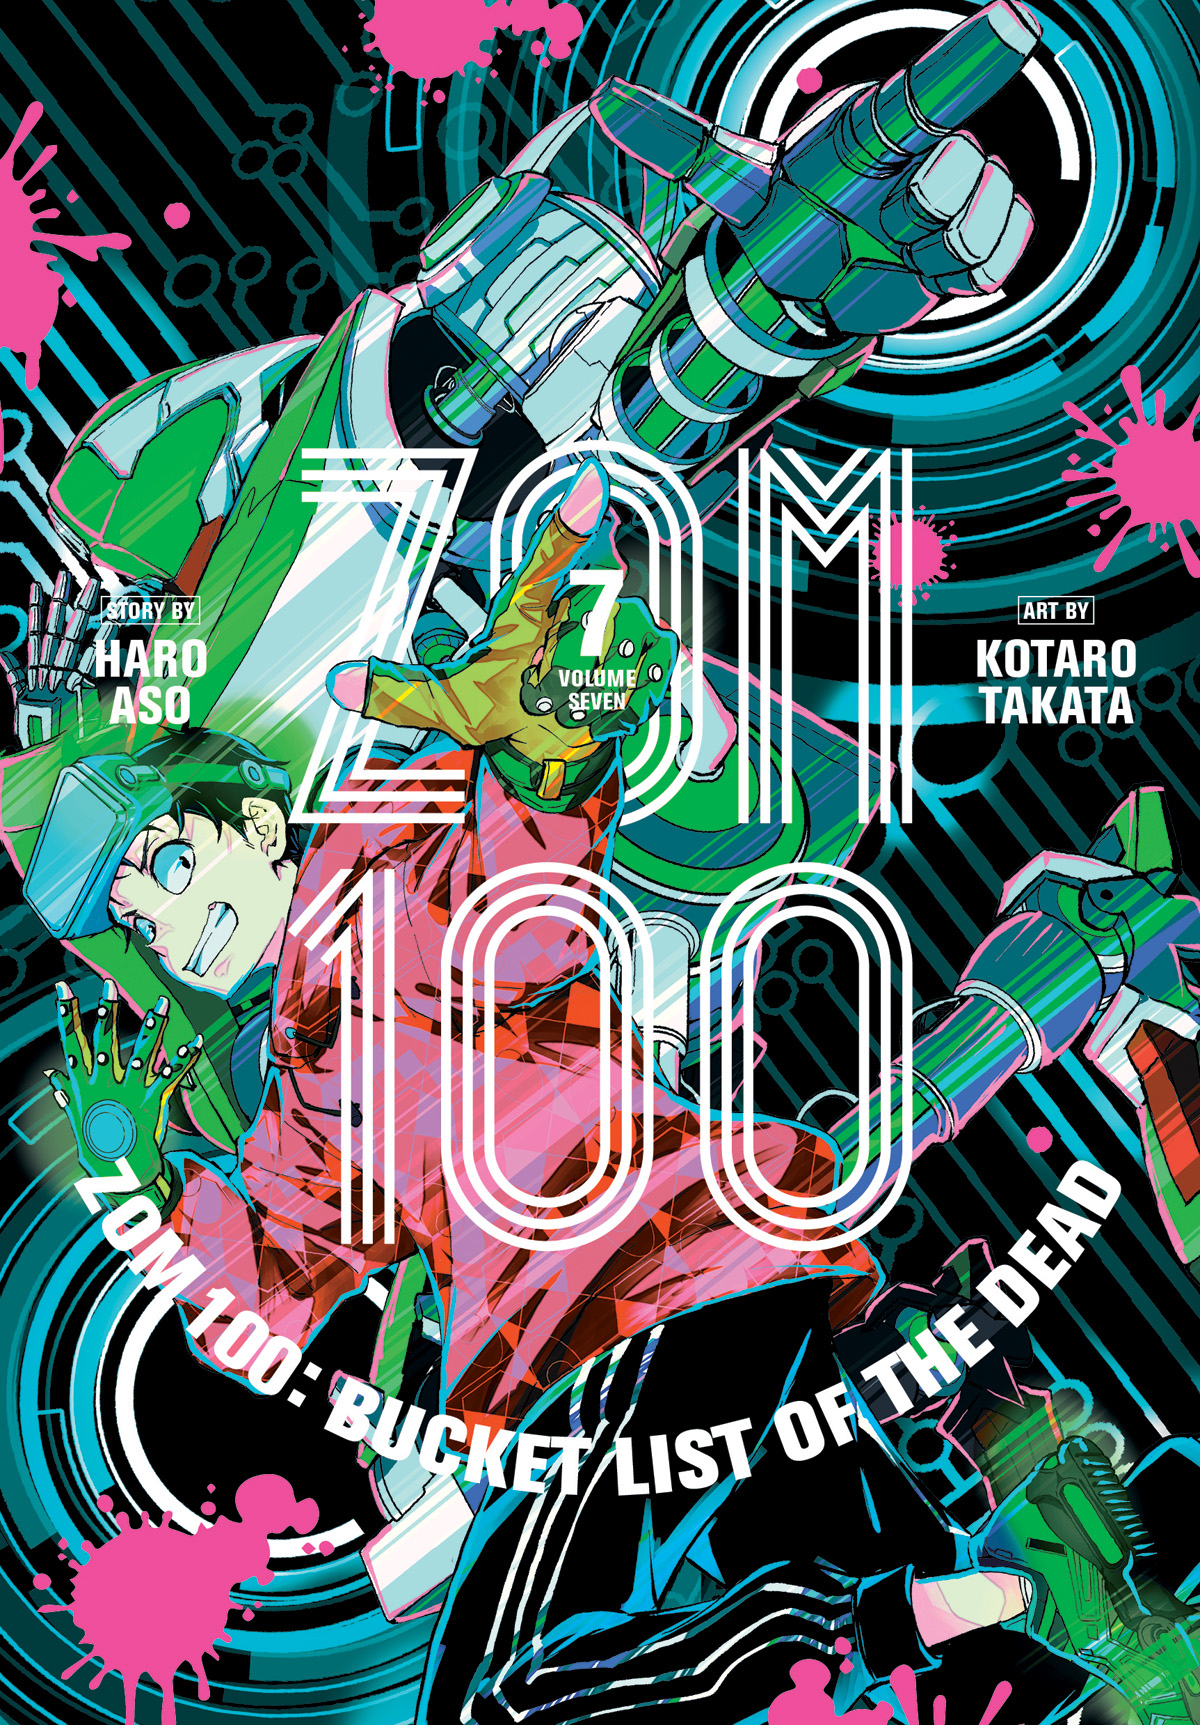 Zom 100 Bucket List of the Dead Manga 100 Bucket List of the Dead Manga Volume 7